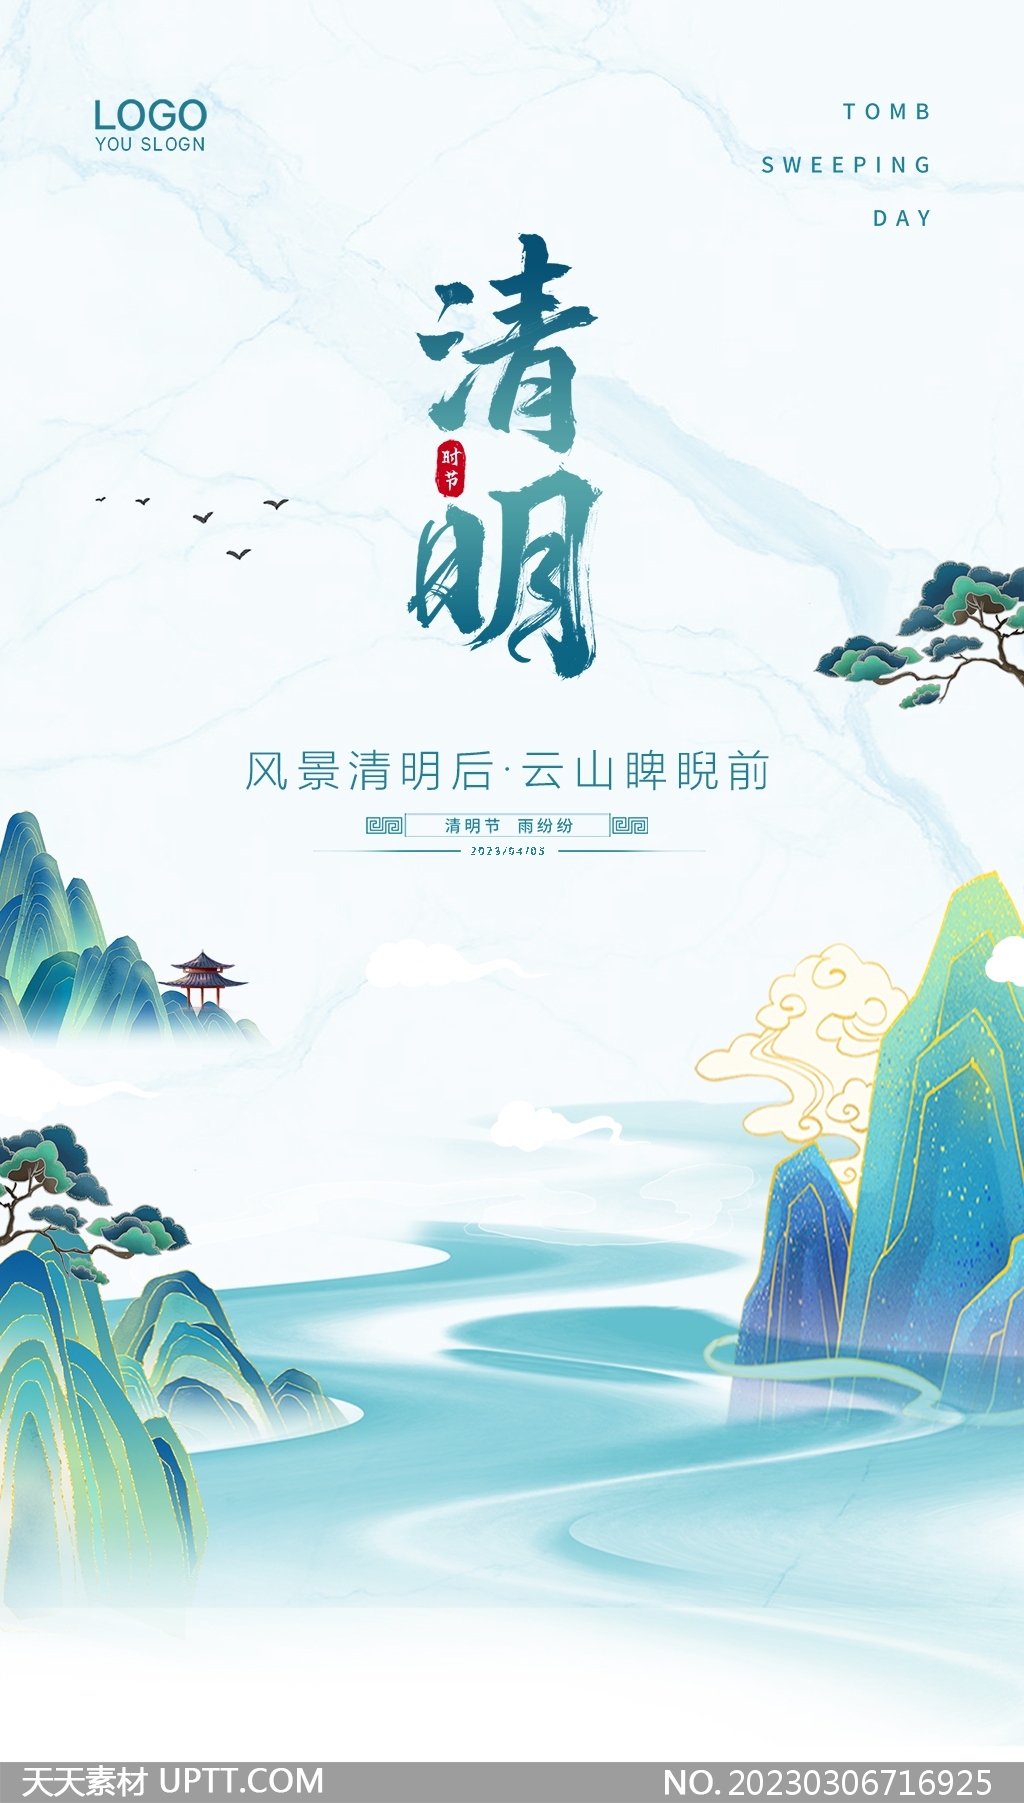 中国风清明节手机海报设计素材-天天素材库设计素材 image